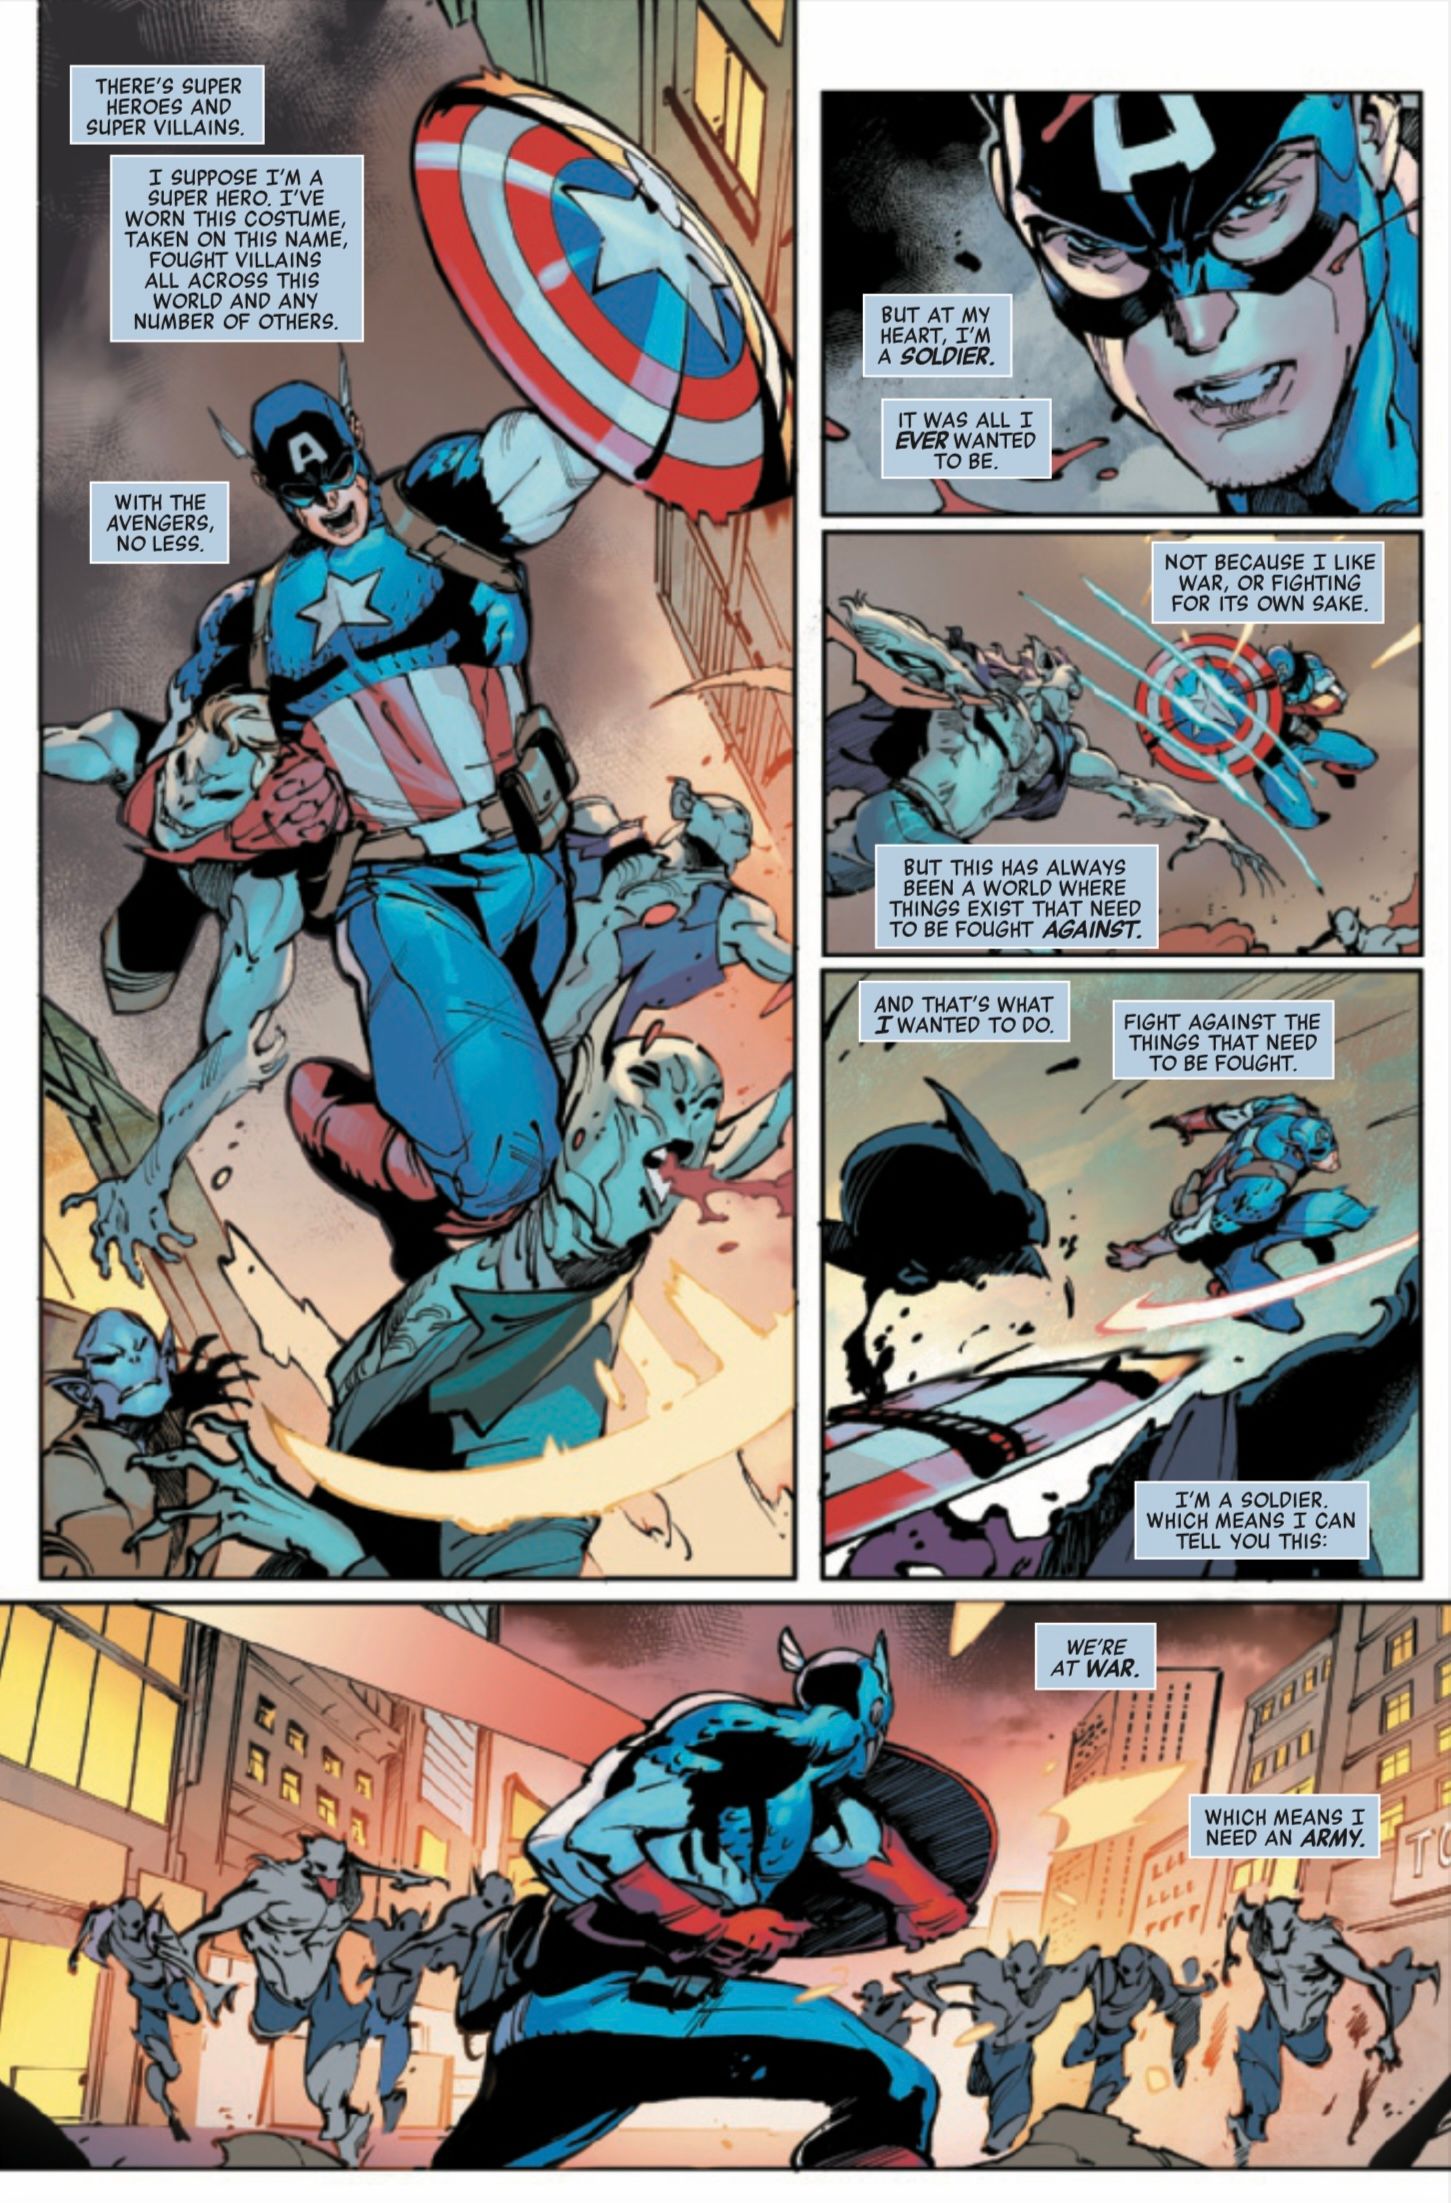 Avengers #14 Preview 4 Captain America vs Vampires